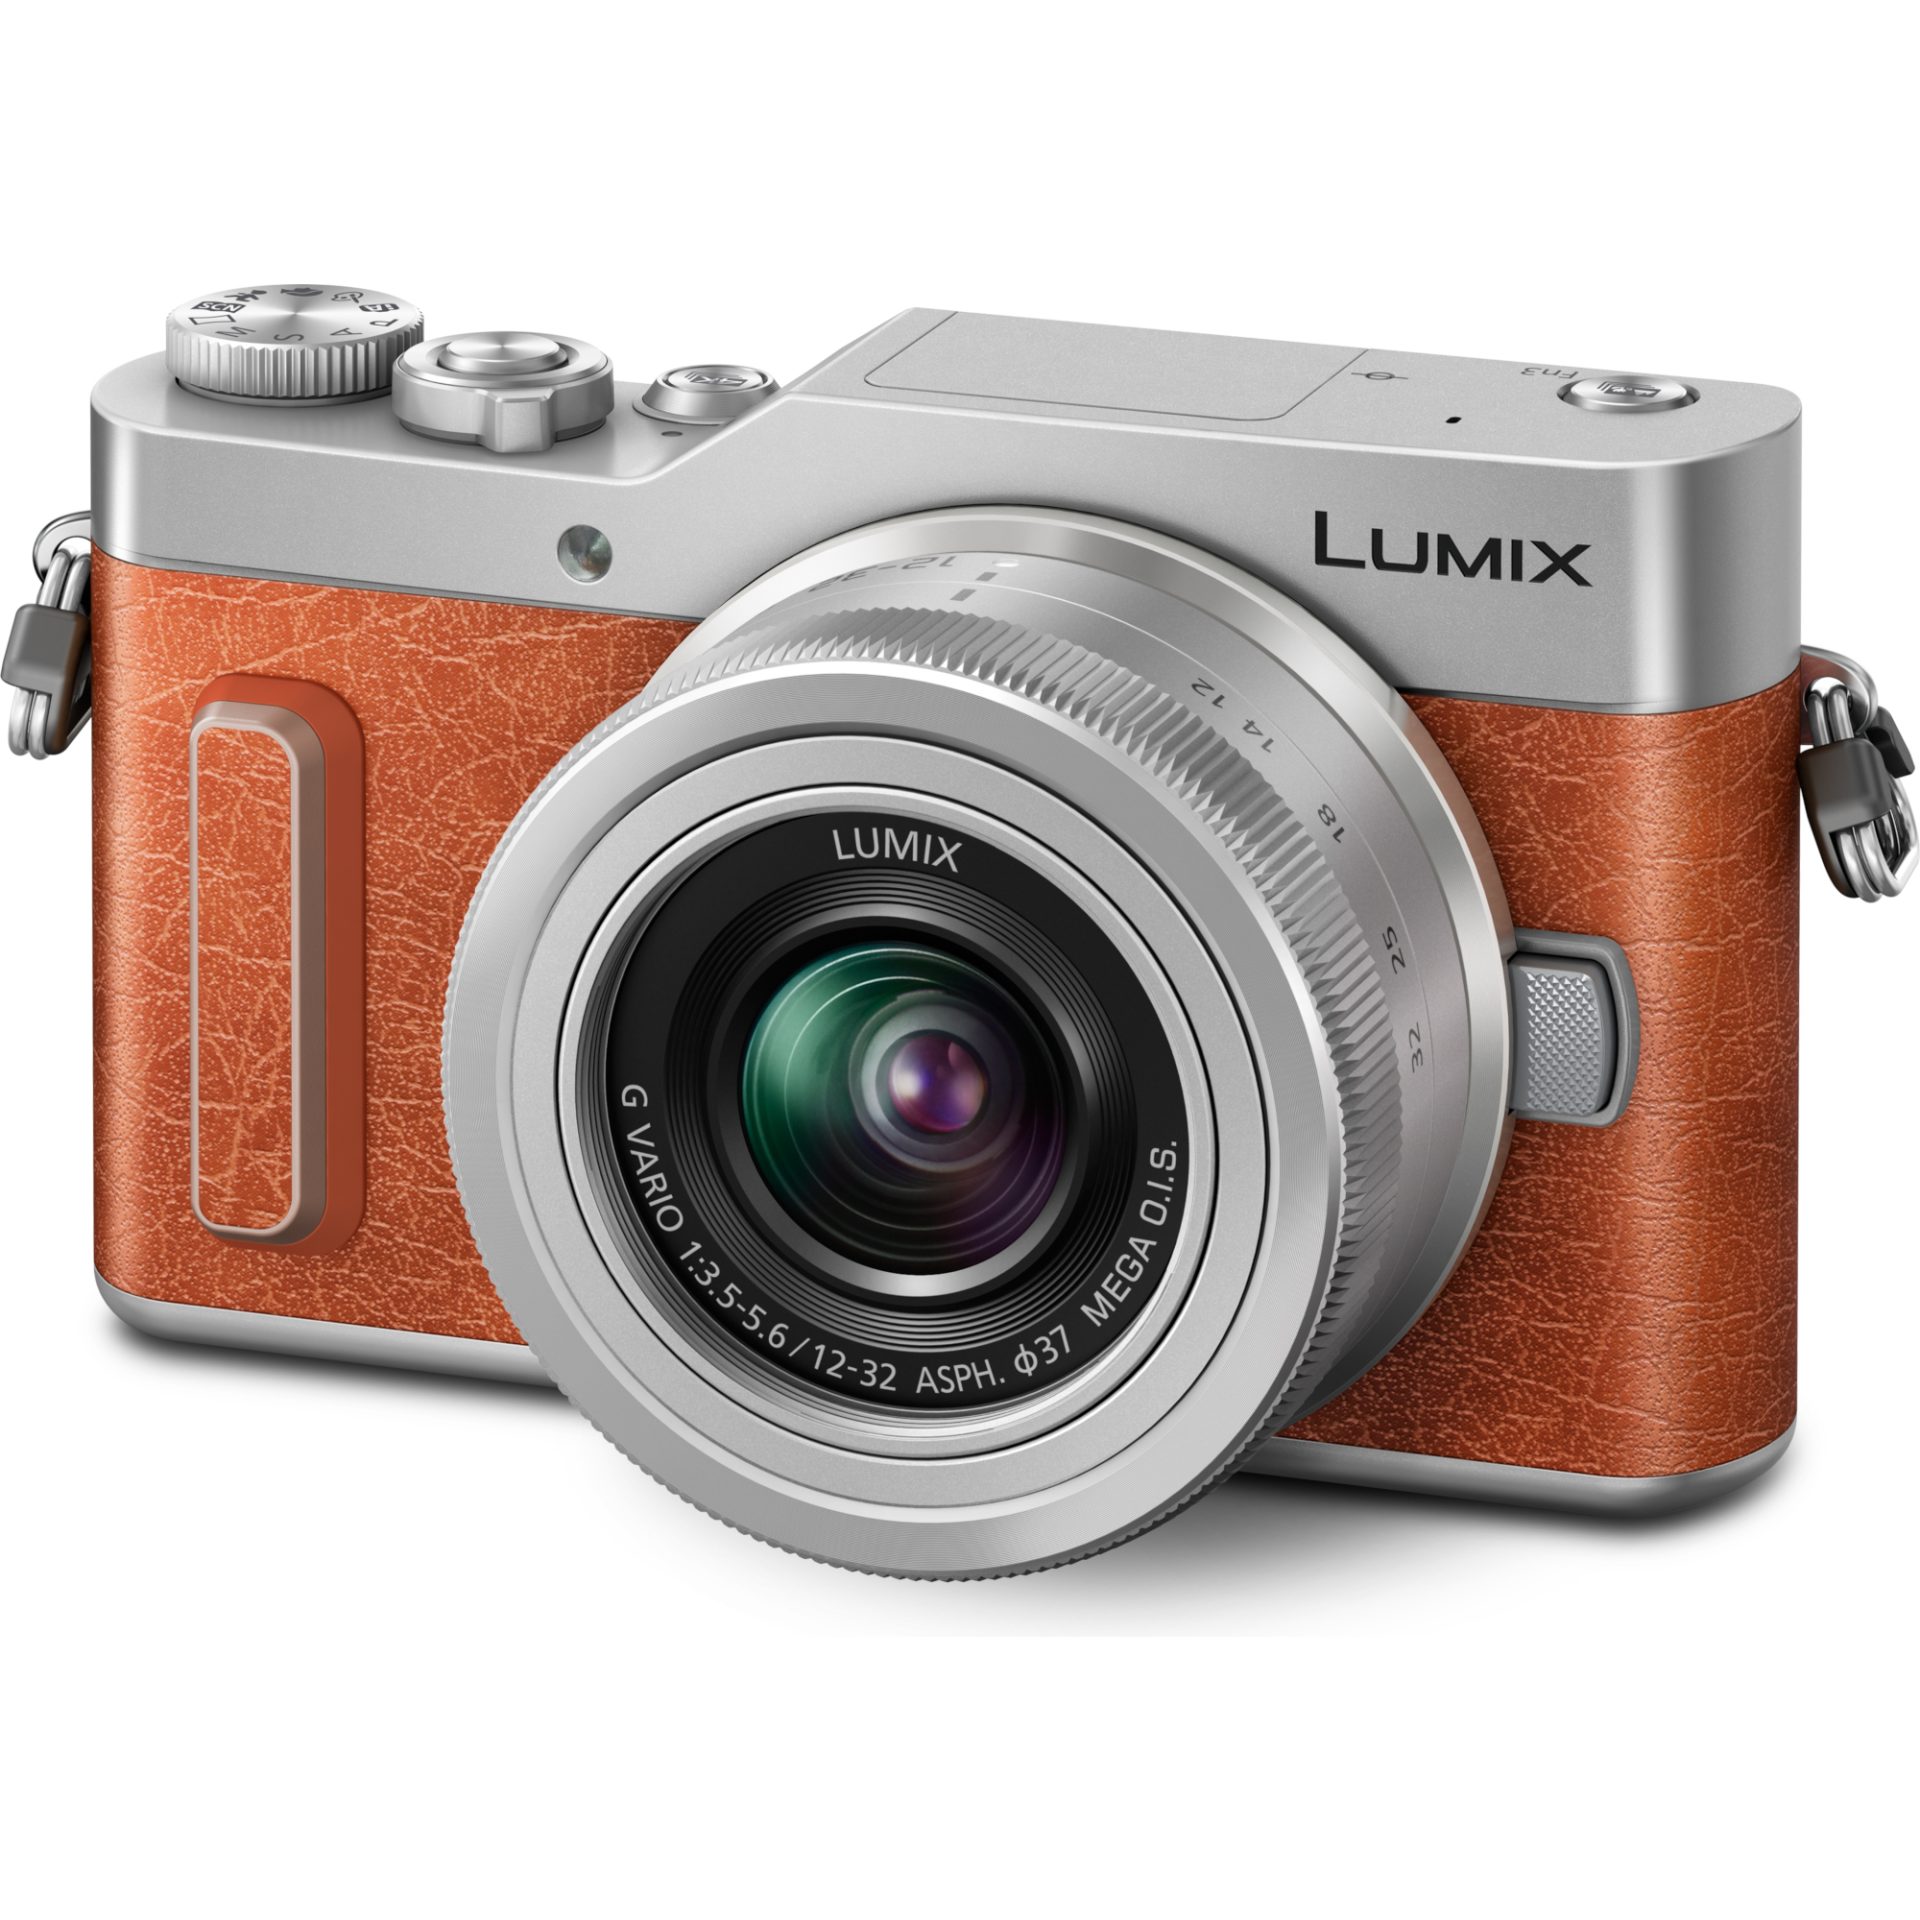 Panasonic DC-GX880K Lumix digitální fotoaparát pro blogery + H-FS12032 12-32mm, F3.5-5.6 (4K fotografie, noční autoportrétní režim, wi-fi), oranžová